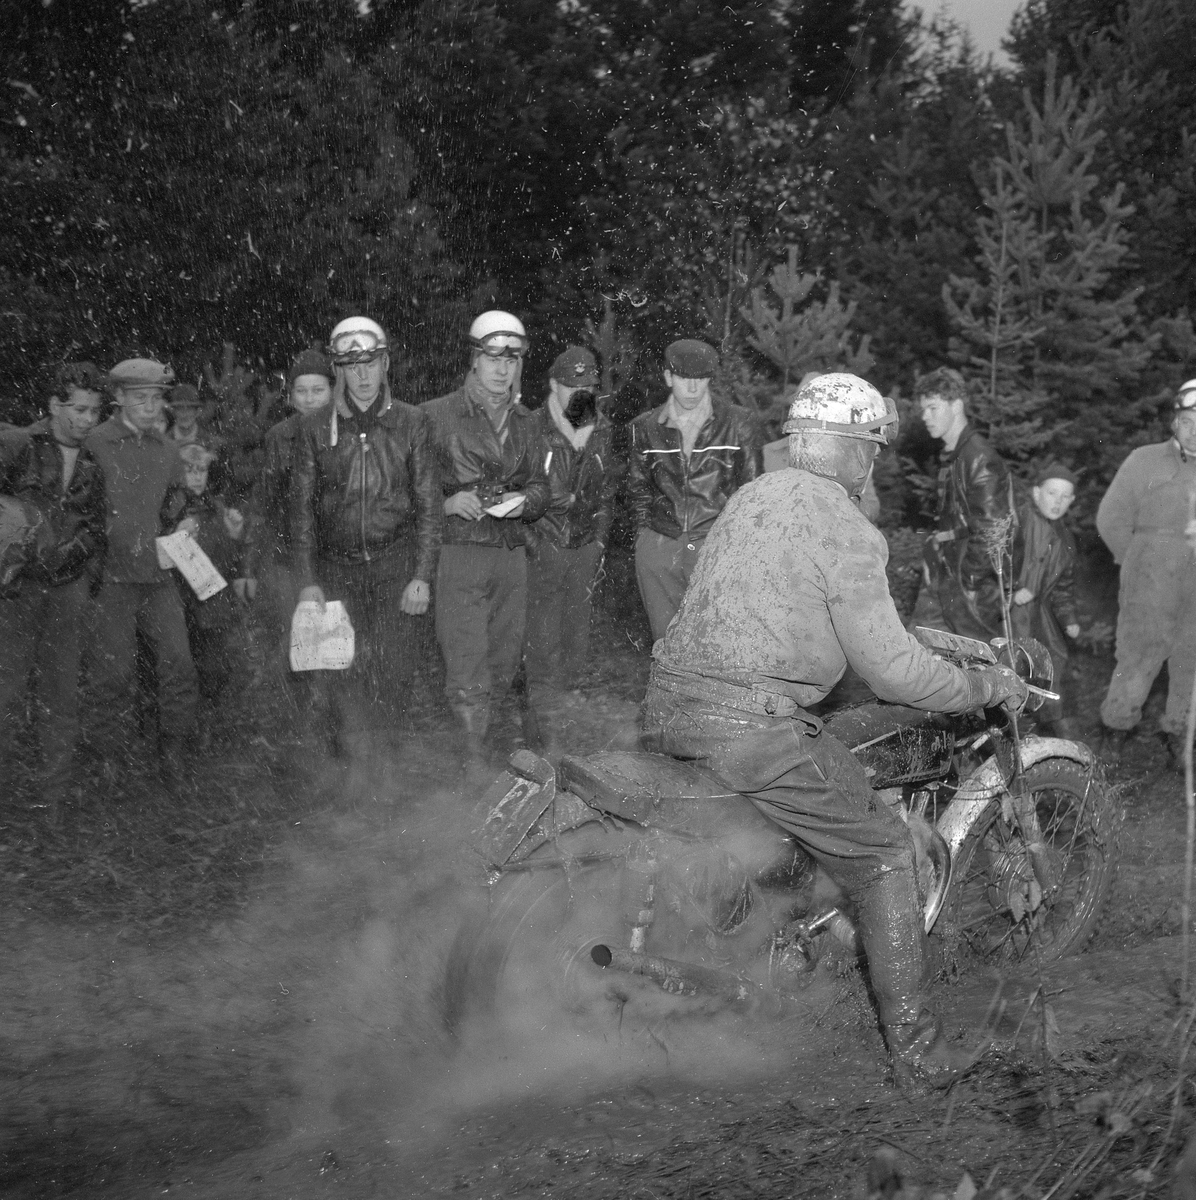 Brickebacksloppet, ÖK-arrangemang.
Oktober 1956.